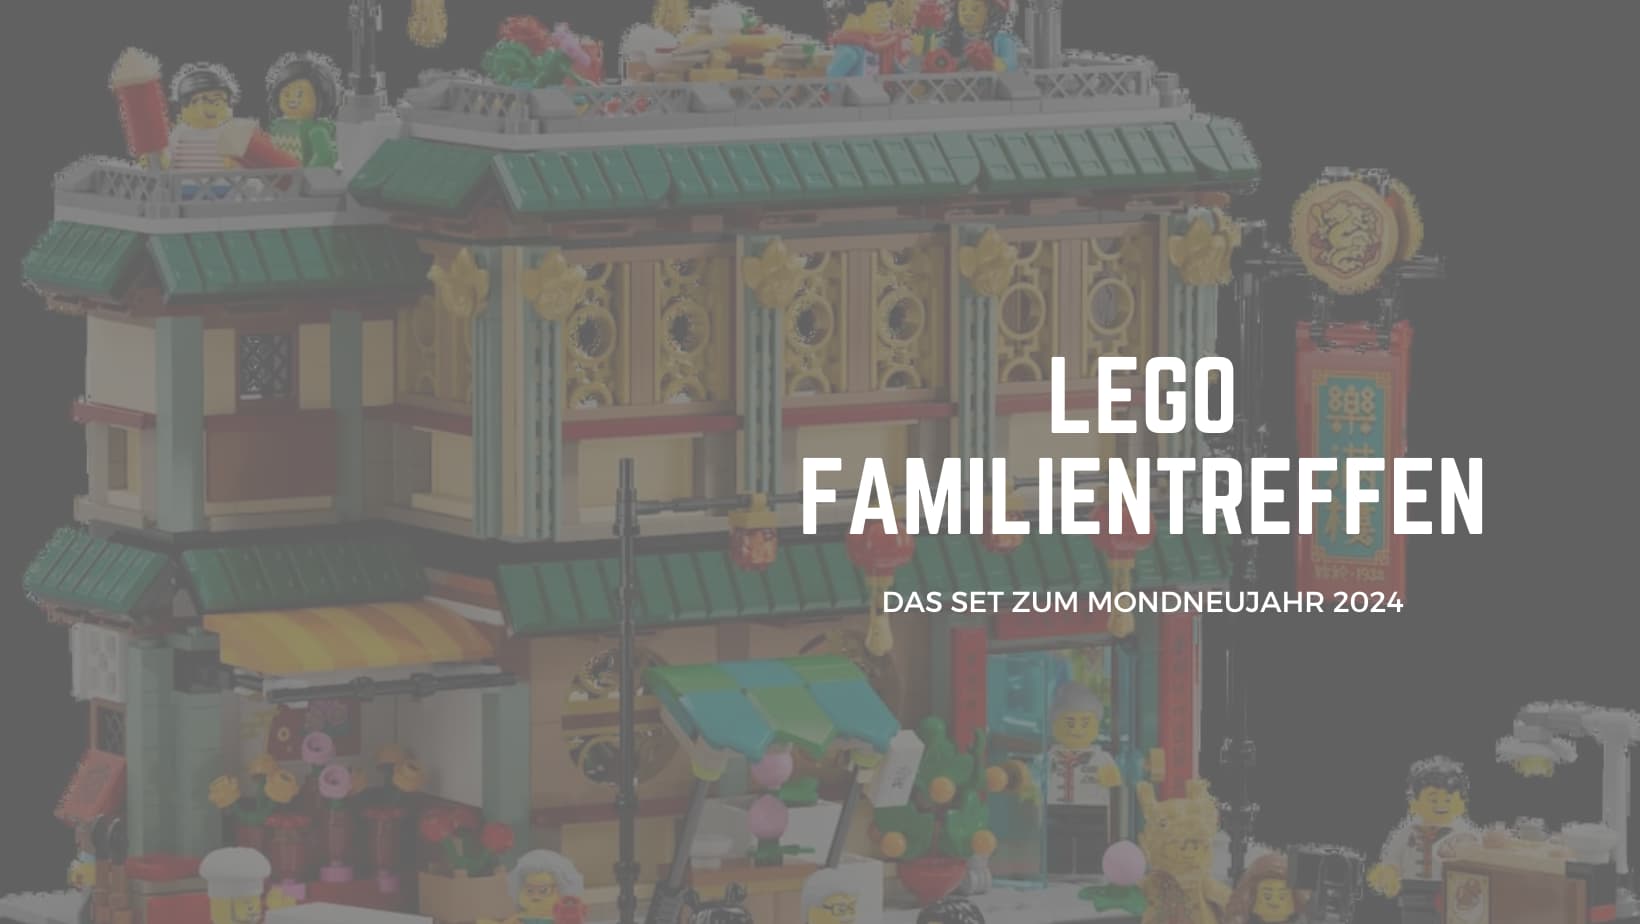 LEGO Mondneujahrsfest Familientreffen